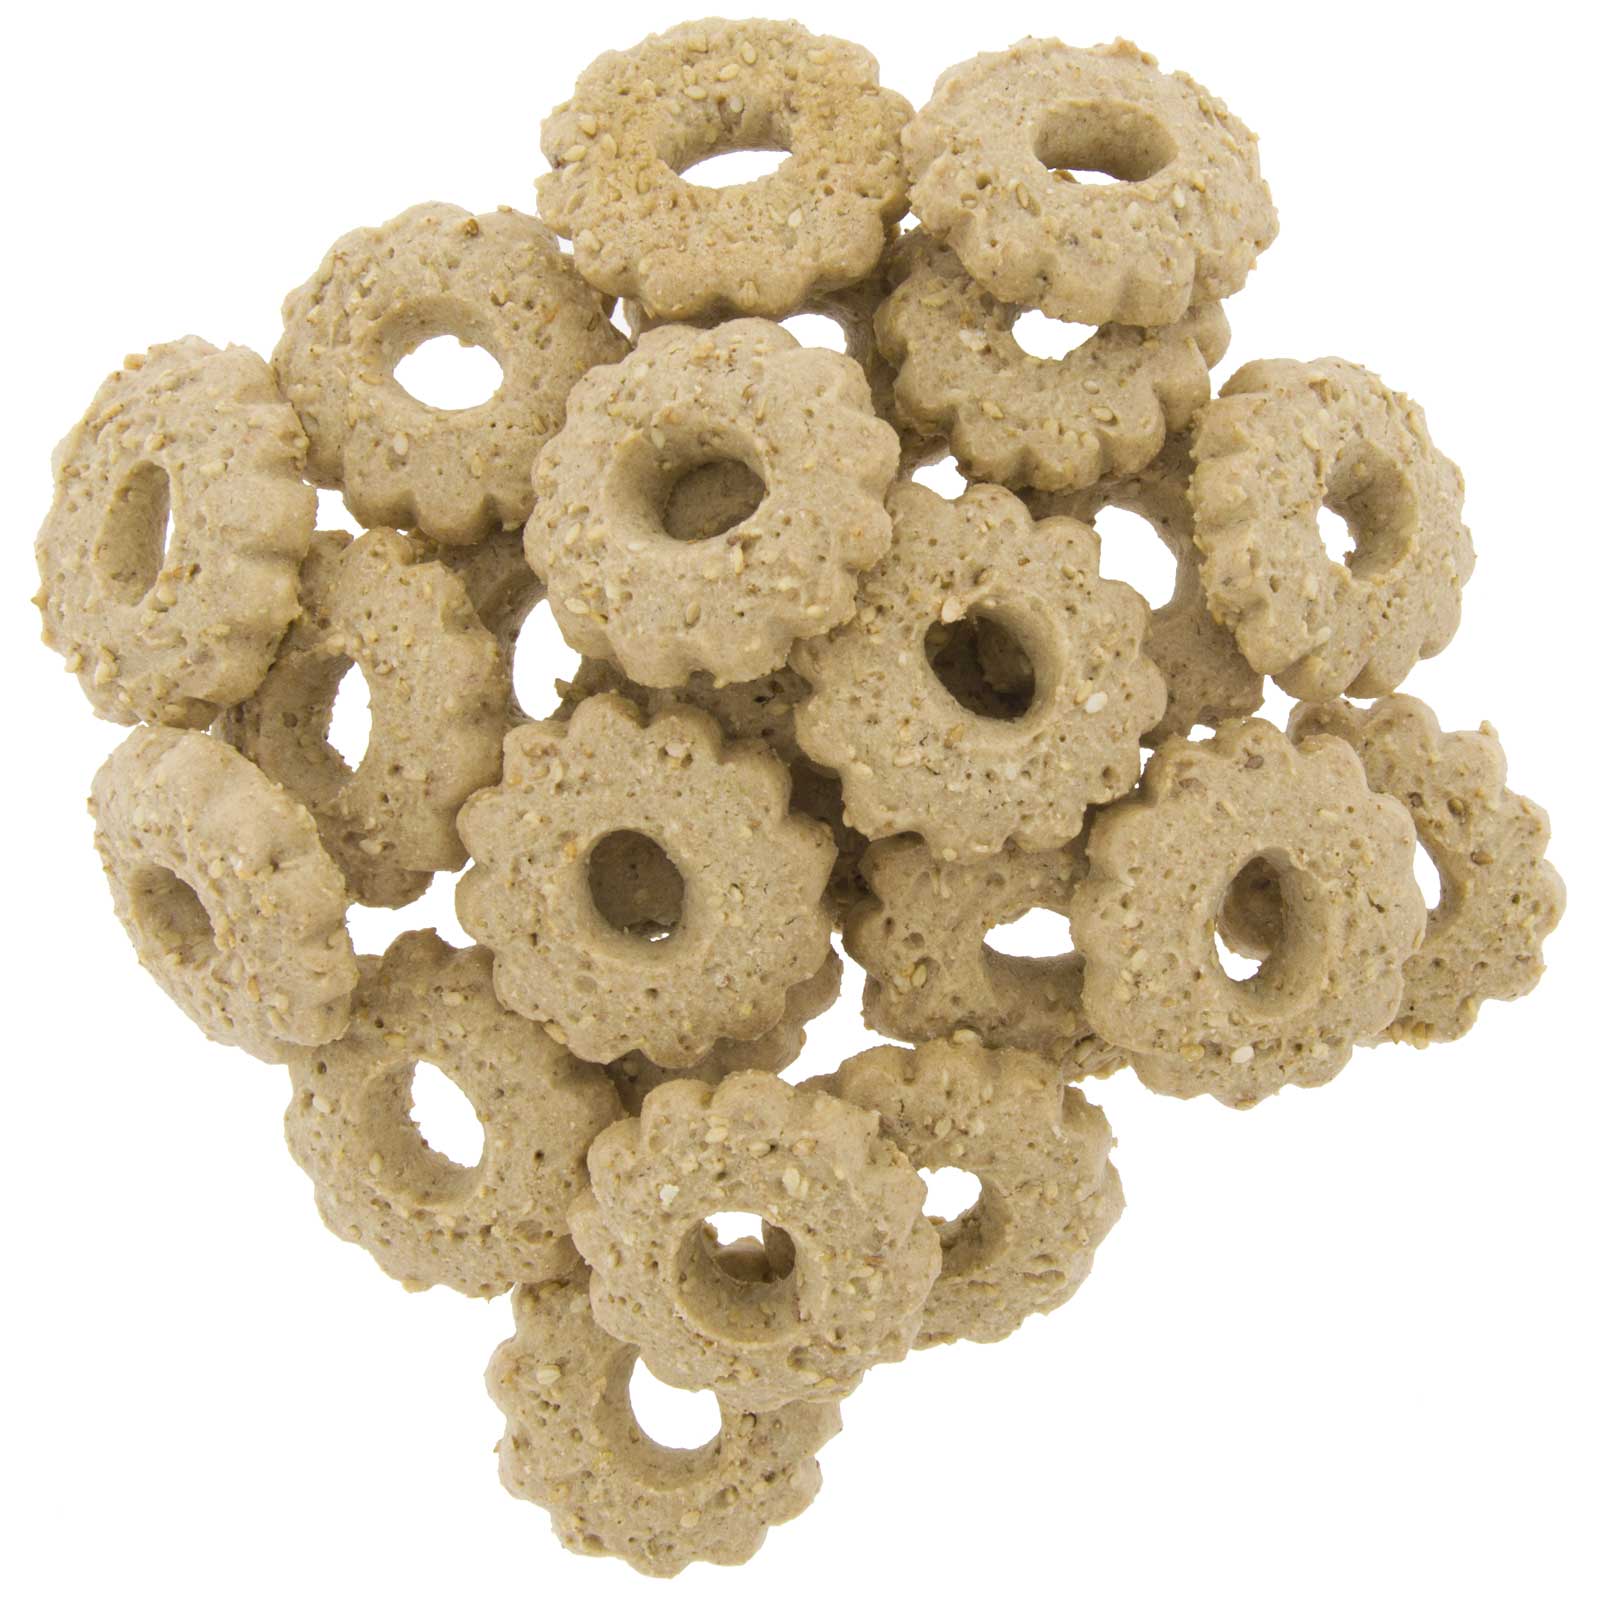 Saracene Threads (trigo sarraceno) 225 g galletas ecolóxicas de elaboración artesanal